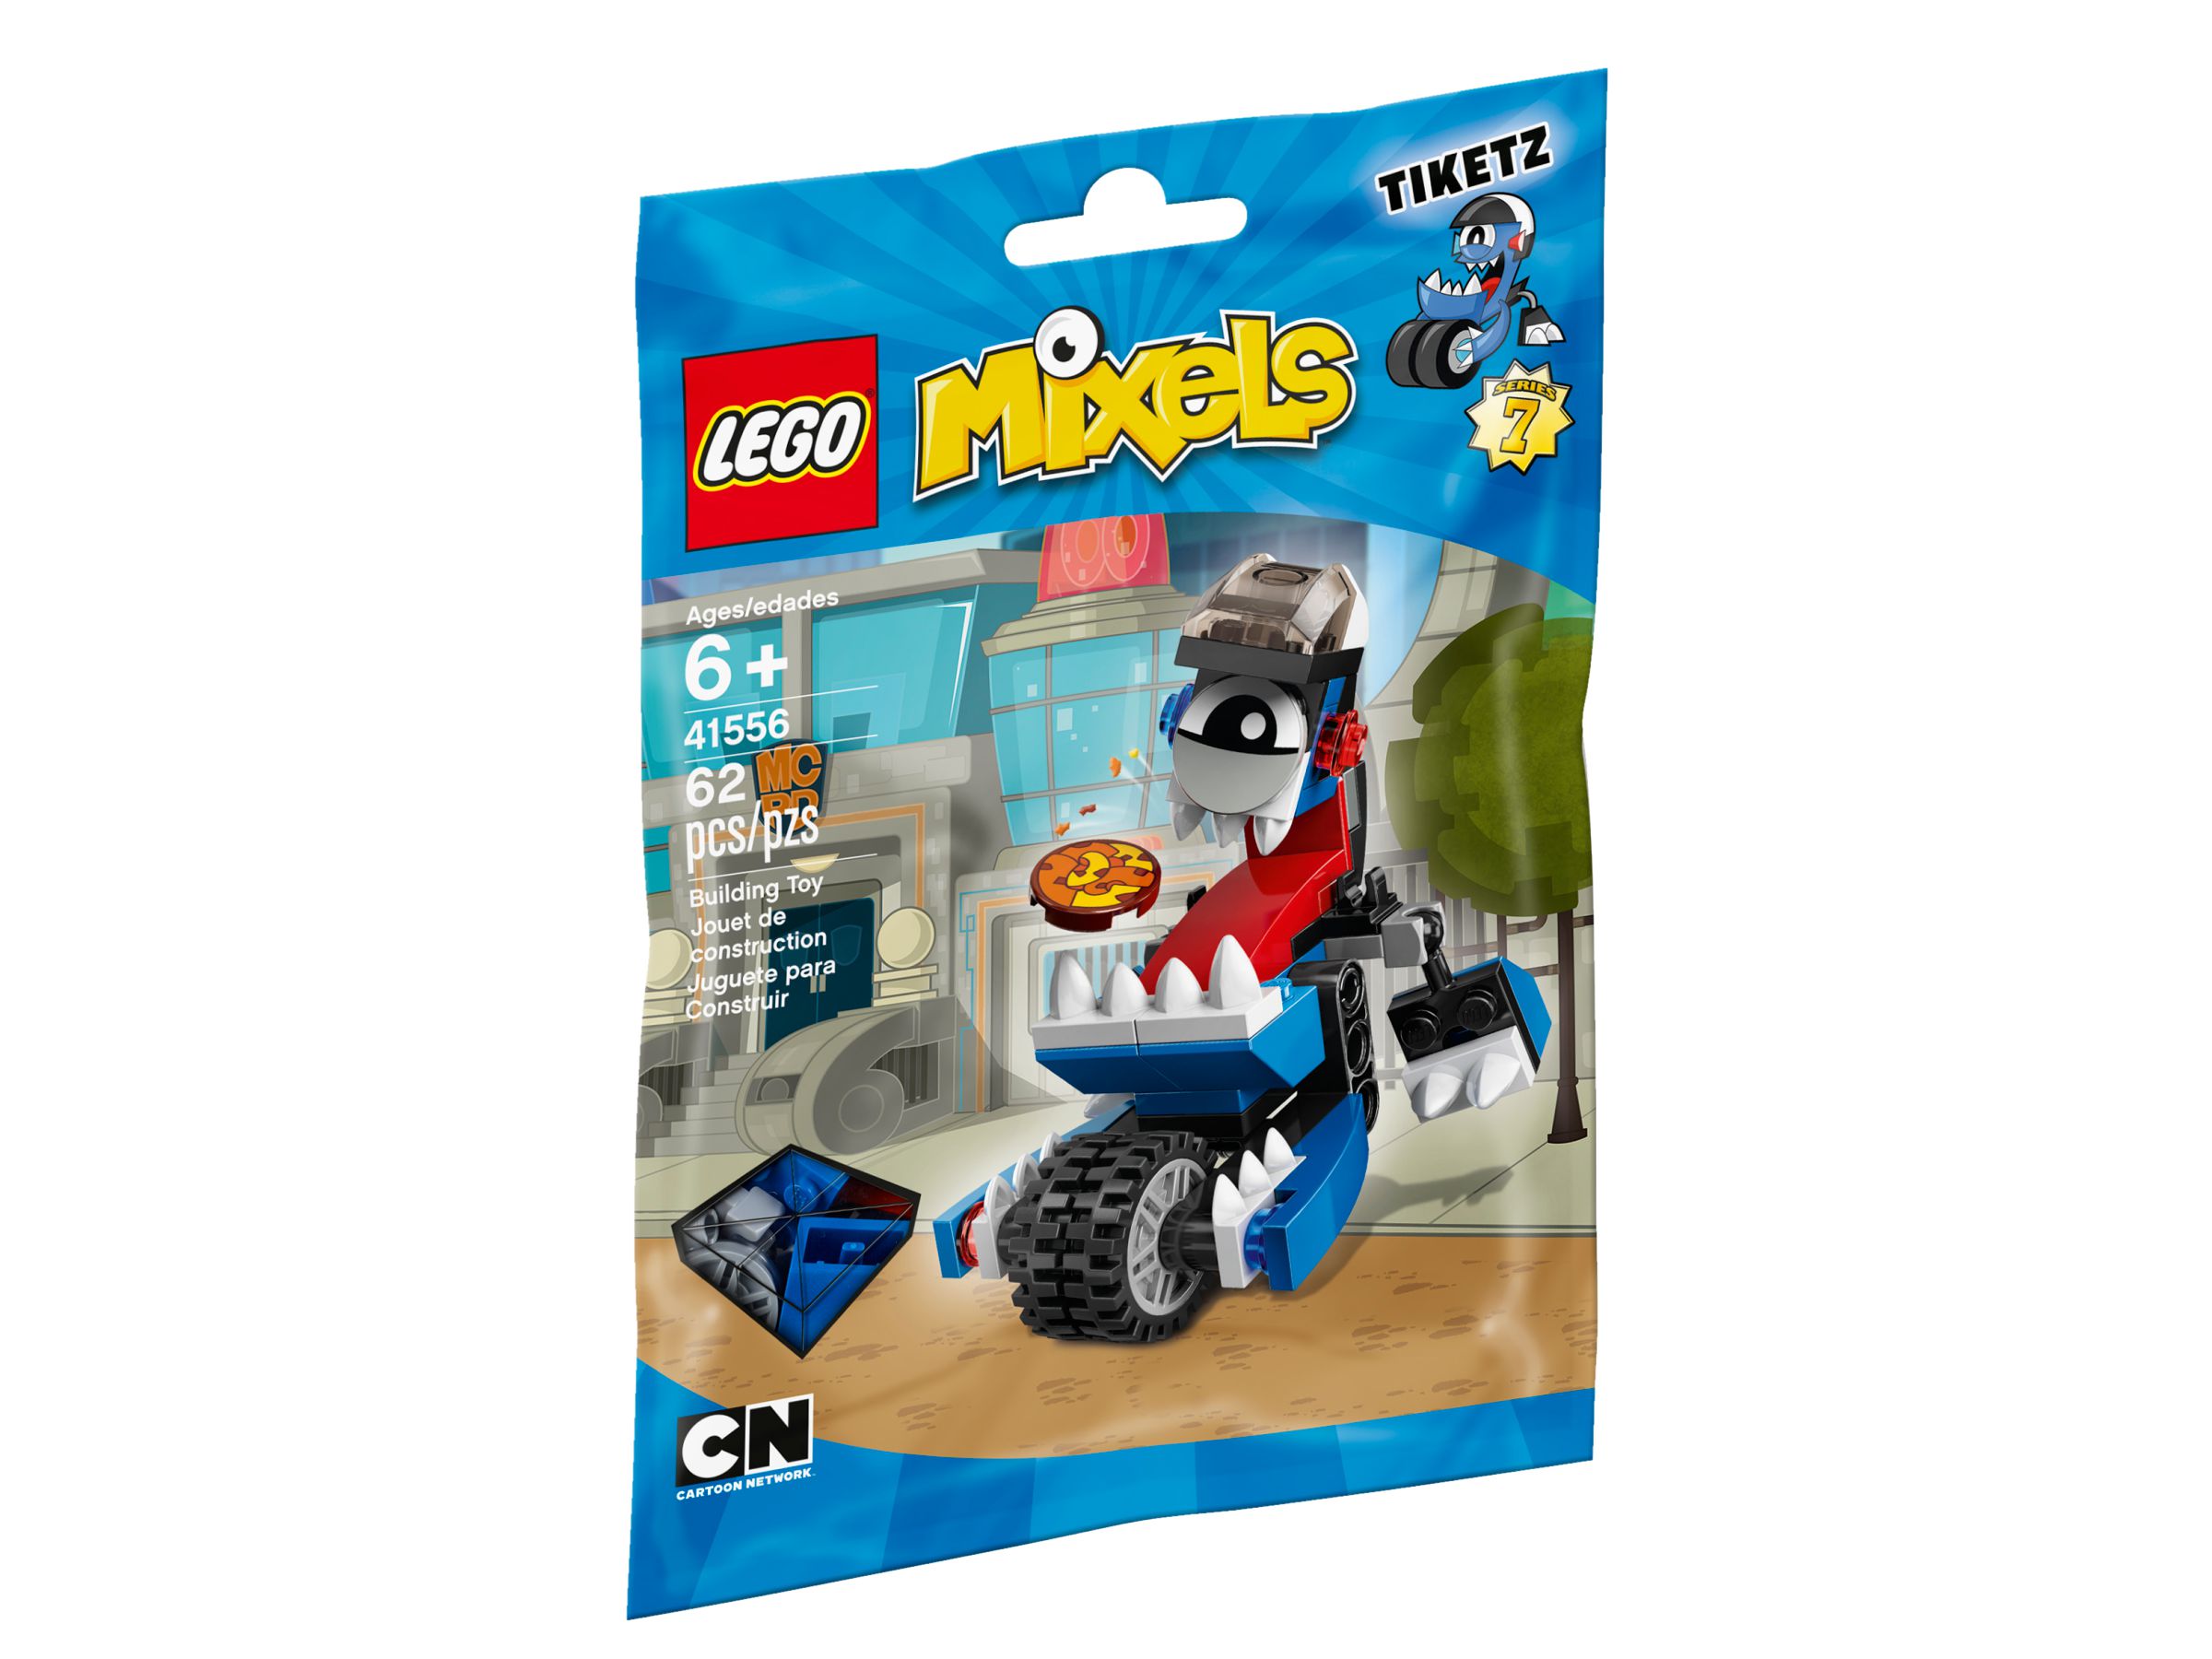 LEGO Mixels 41556 Tiketz LEGO_41556_alt1.jpg